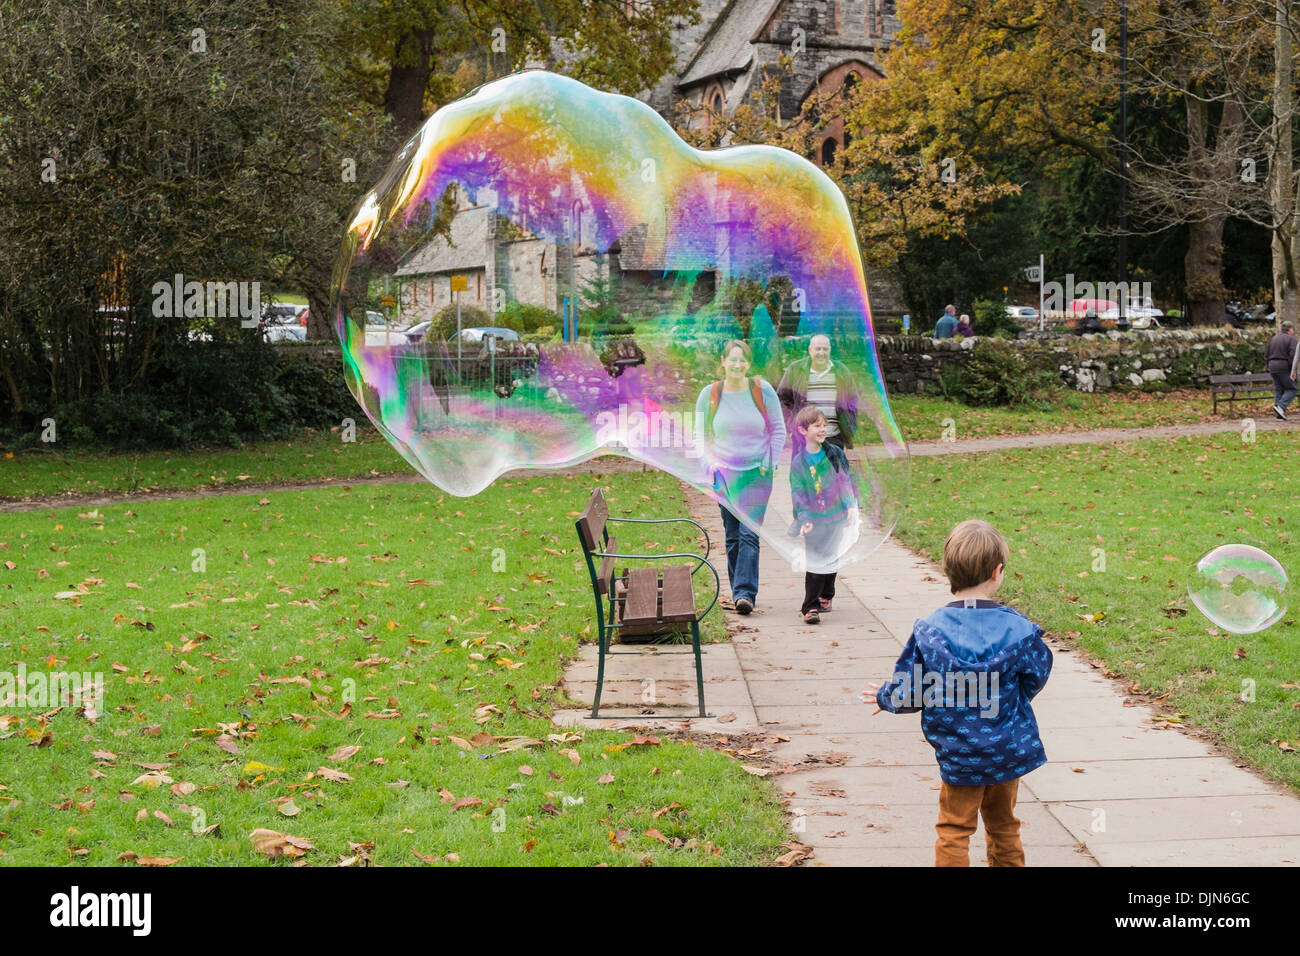 Un giovane ragazzo ha divertimento con una bolla di sapone gigante che mostra i colori dell'arcobaleno e persone sorridenti a Betws-y-Coed, Conwy, Galles del Nord, Regno Unito Foto Stock